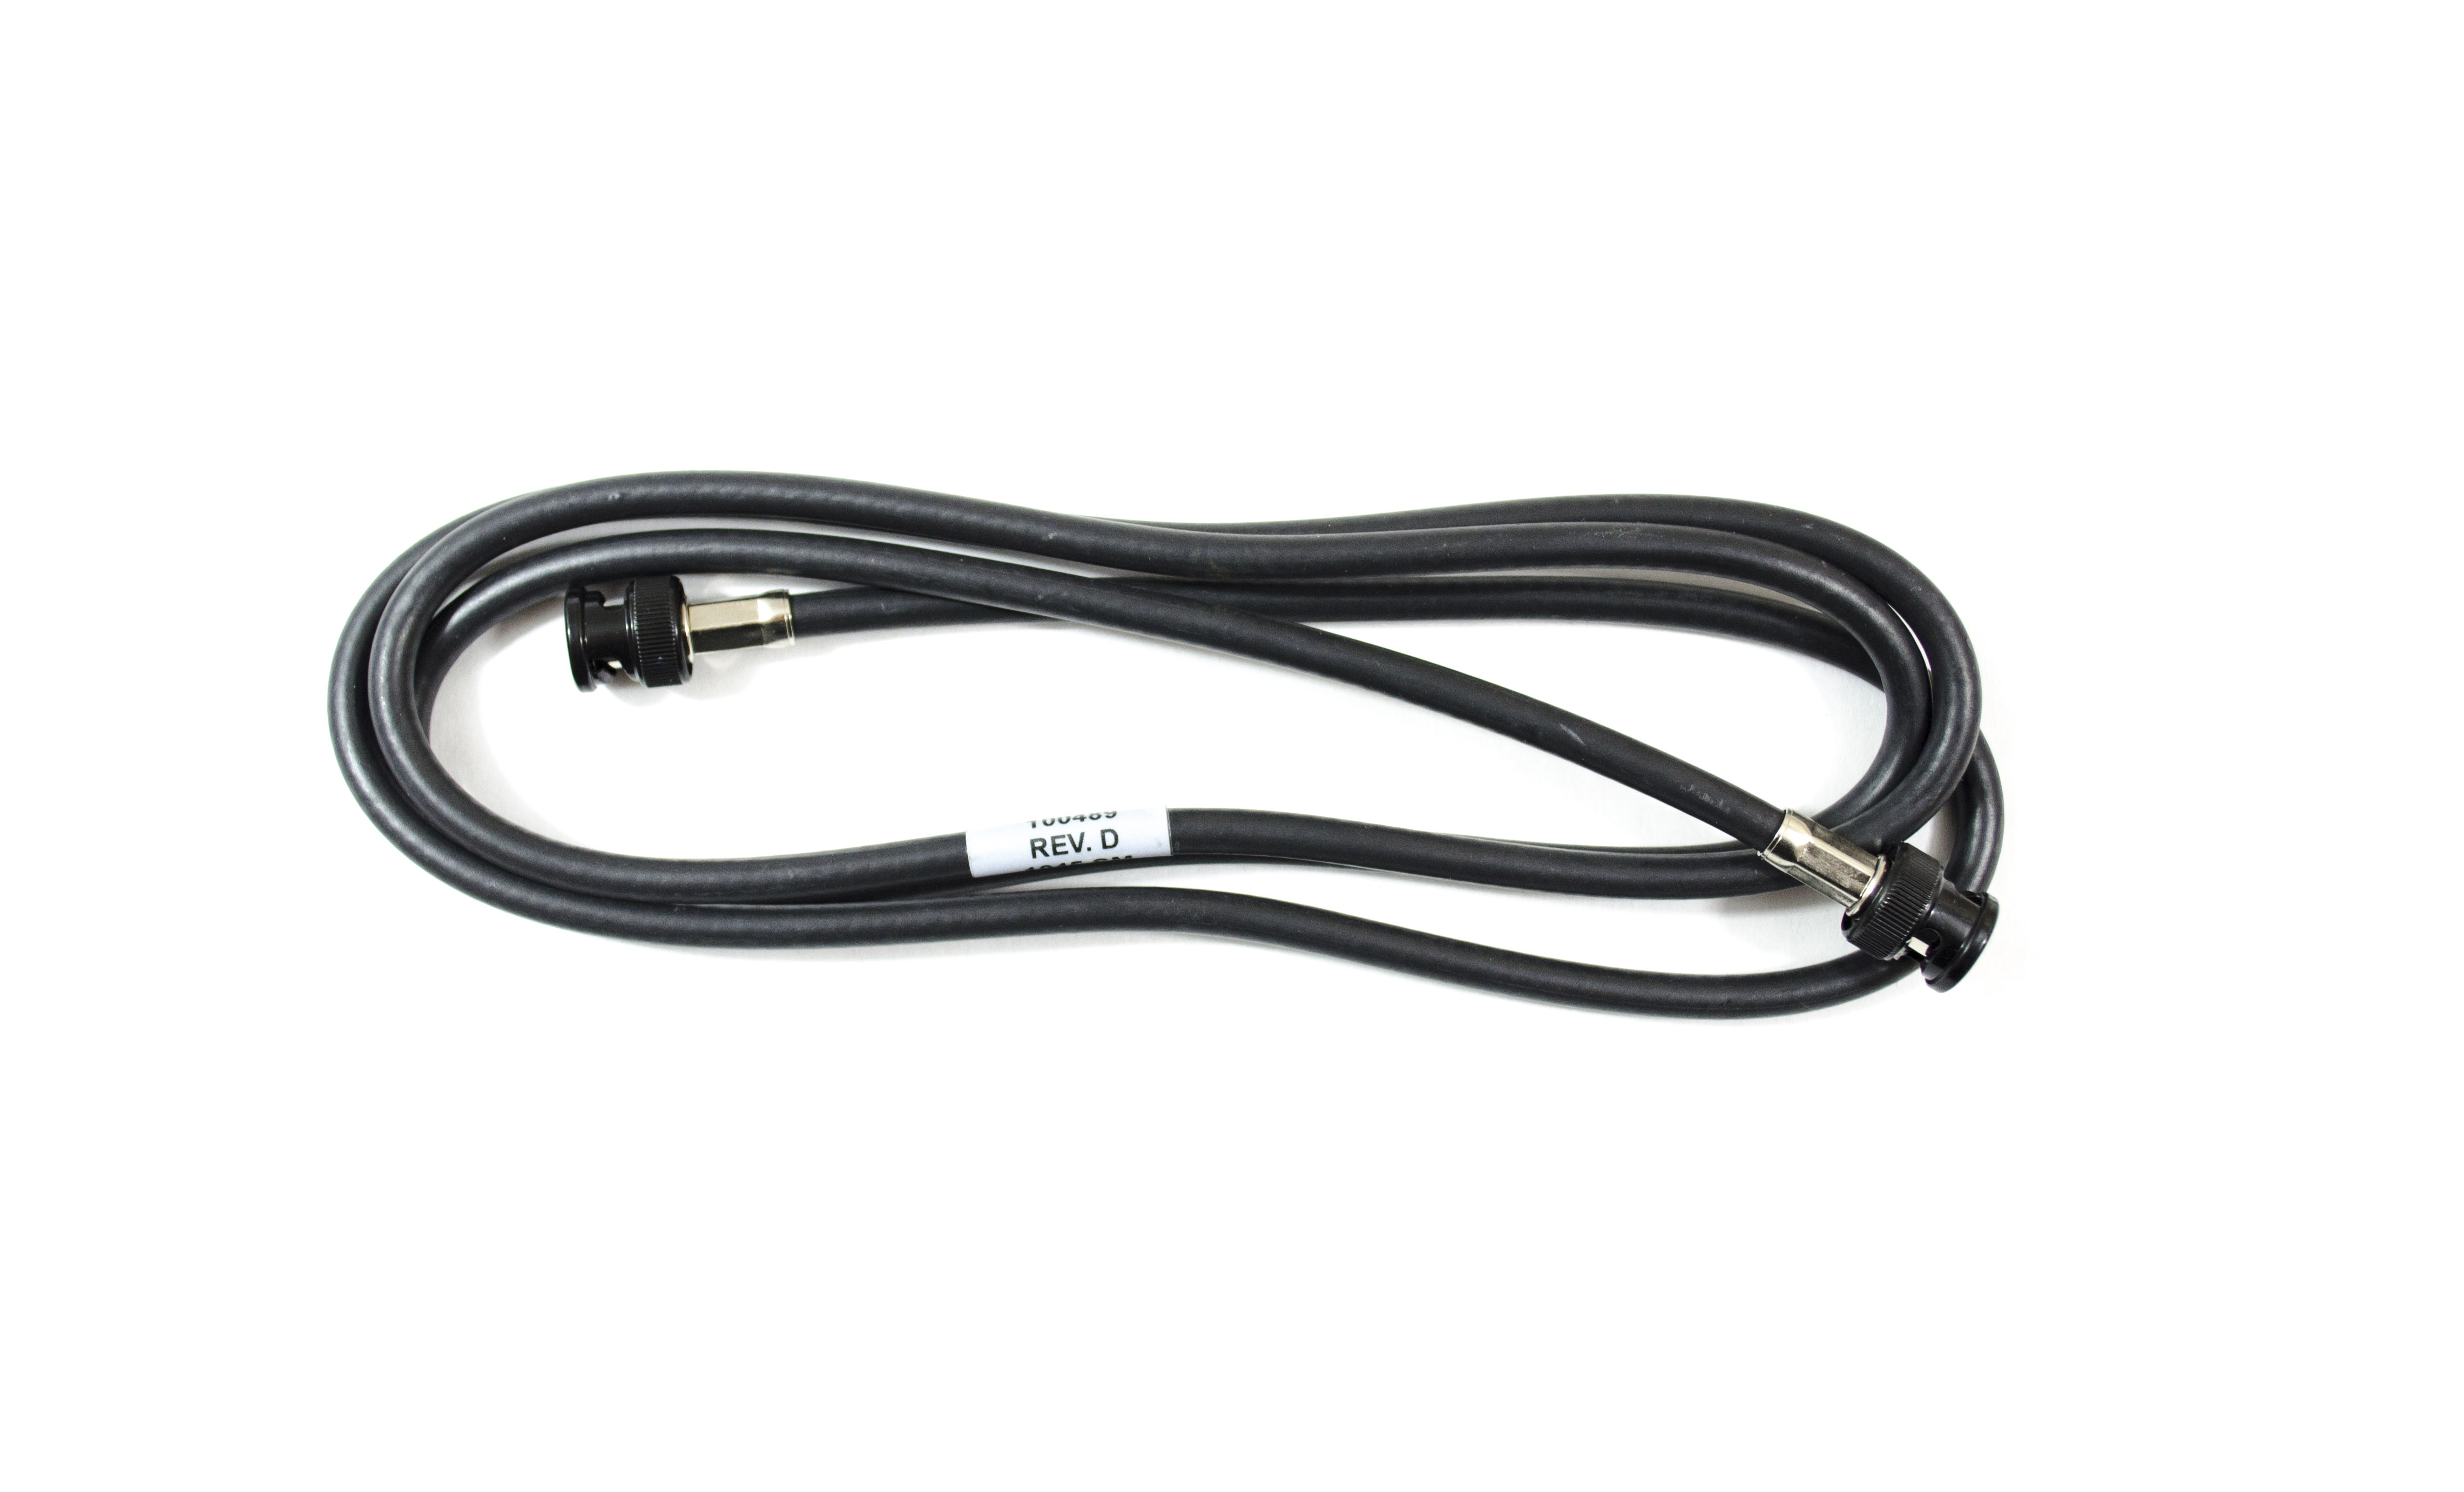 HD- SDI Precision Video Cable -1505A